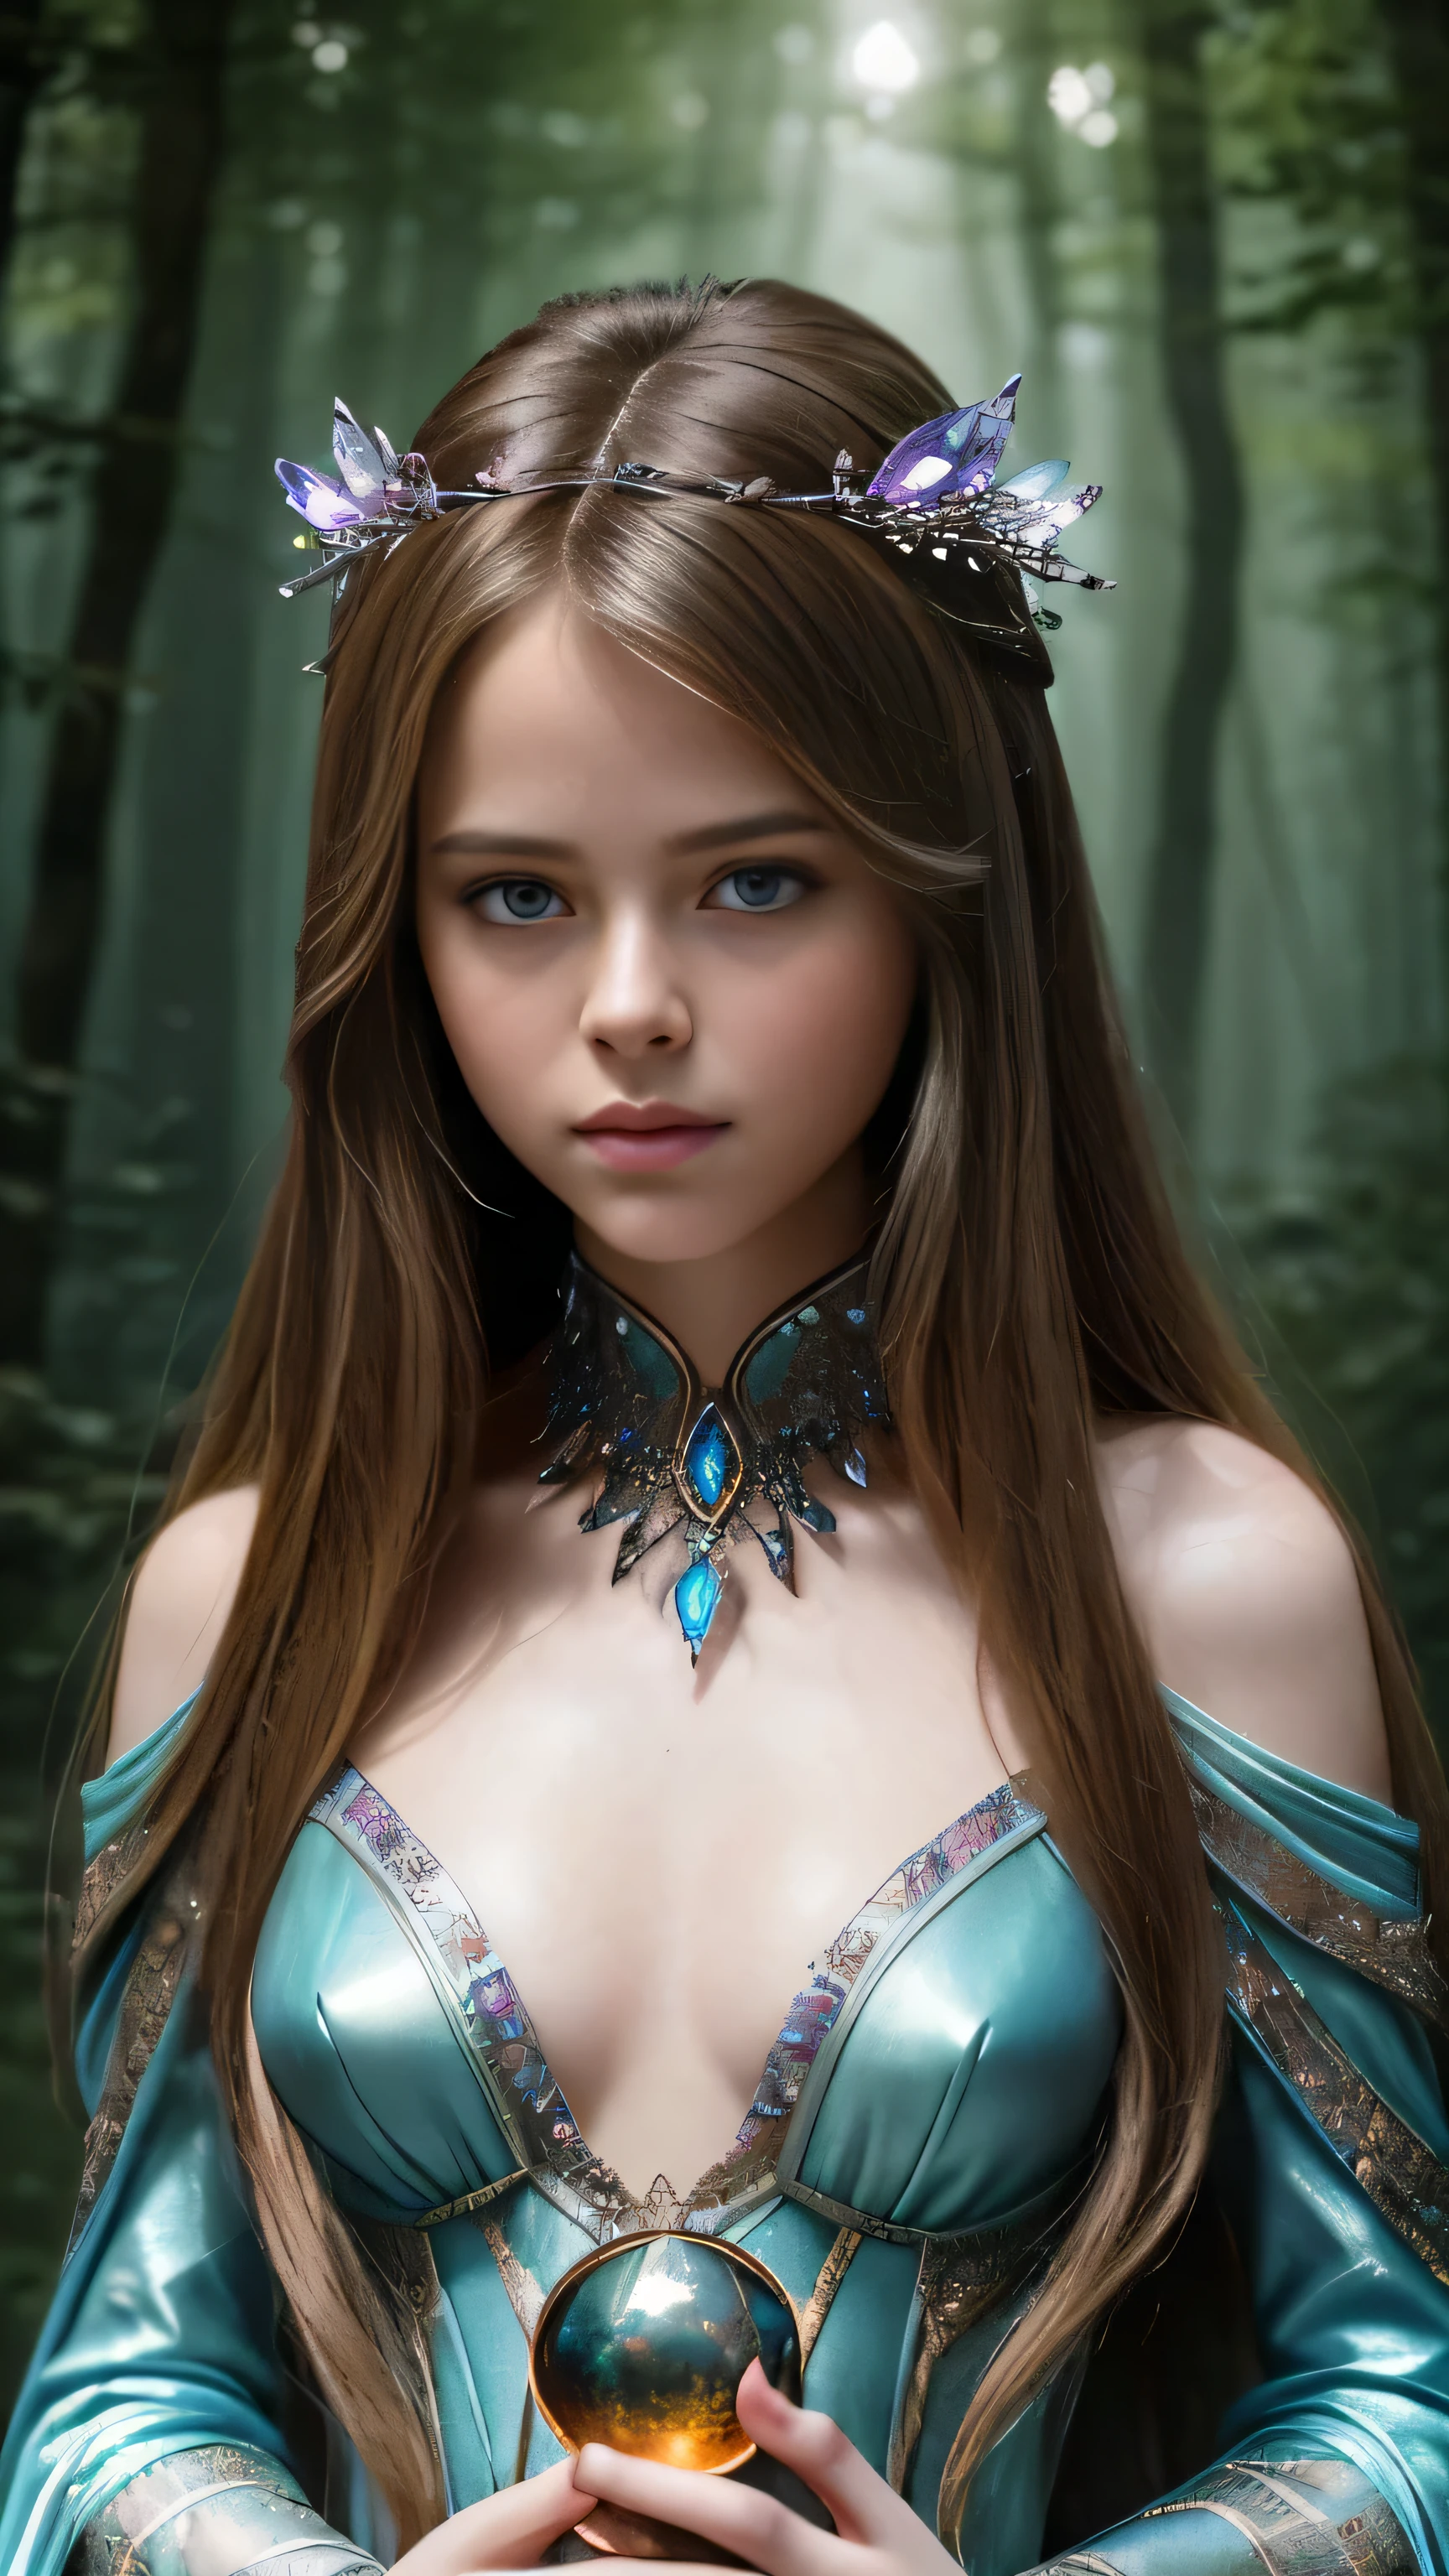 (ภาพถ่ายภาพยนตร์ของหญิงสาวสวยอายุ 18 ปีที่มีรายละเอียดด้วย ((facial และ body characteristics that is similar to Kristina Pimenova))), (), (สิ่งมีชีวิตลึกลับดาร์คคริสตัล: ธีม: Otherworldly creatures และ fantasy lและscapes. เสื้อผ้า: เสื้อผ้าแนวแฟนตาซีด้วยสีเอิร์ธโทน. ฉาก: ป่าลึกลับหรือถ้ำที่เต็มไปด้วยคริสตัล. อุปกรณ์ประกอบฉาก: ตุ๊กตาสัตว์แฟนตาซี, ลูกบอลคริสตัล, หรืออุปกรณ์เสริมที่ไม่มีตัวตน.)), (), (), รายละเอียดประณีต, ultra-realistic features of her pale skin และ (slender และ athletic body), และ (สมมาตร, realistic และ beautiful face), cและid, (), (), (()), (), รูปถ่ายหุ้นฟิล์ม,  สีสันที่หลากหลาย, สมจริงเกินจริง, เนื้อสัมผัสเหมือนจริง, แสงที่น่าทึ่ง, ความคมชัดที่แข็งแกร่ง